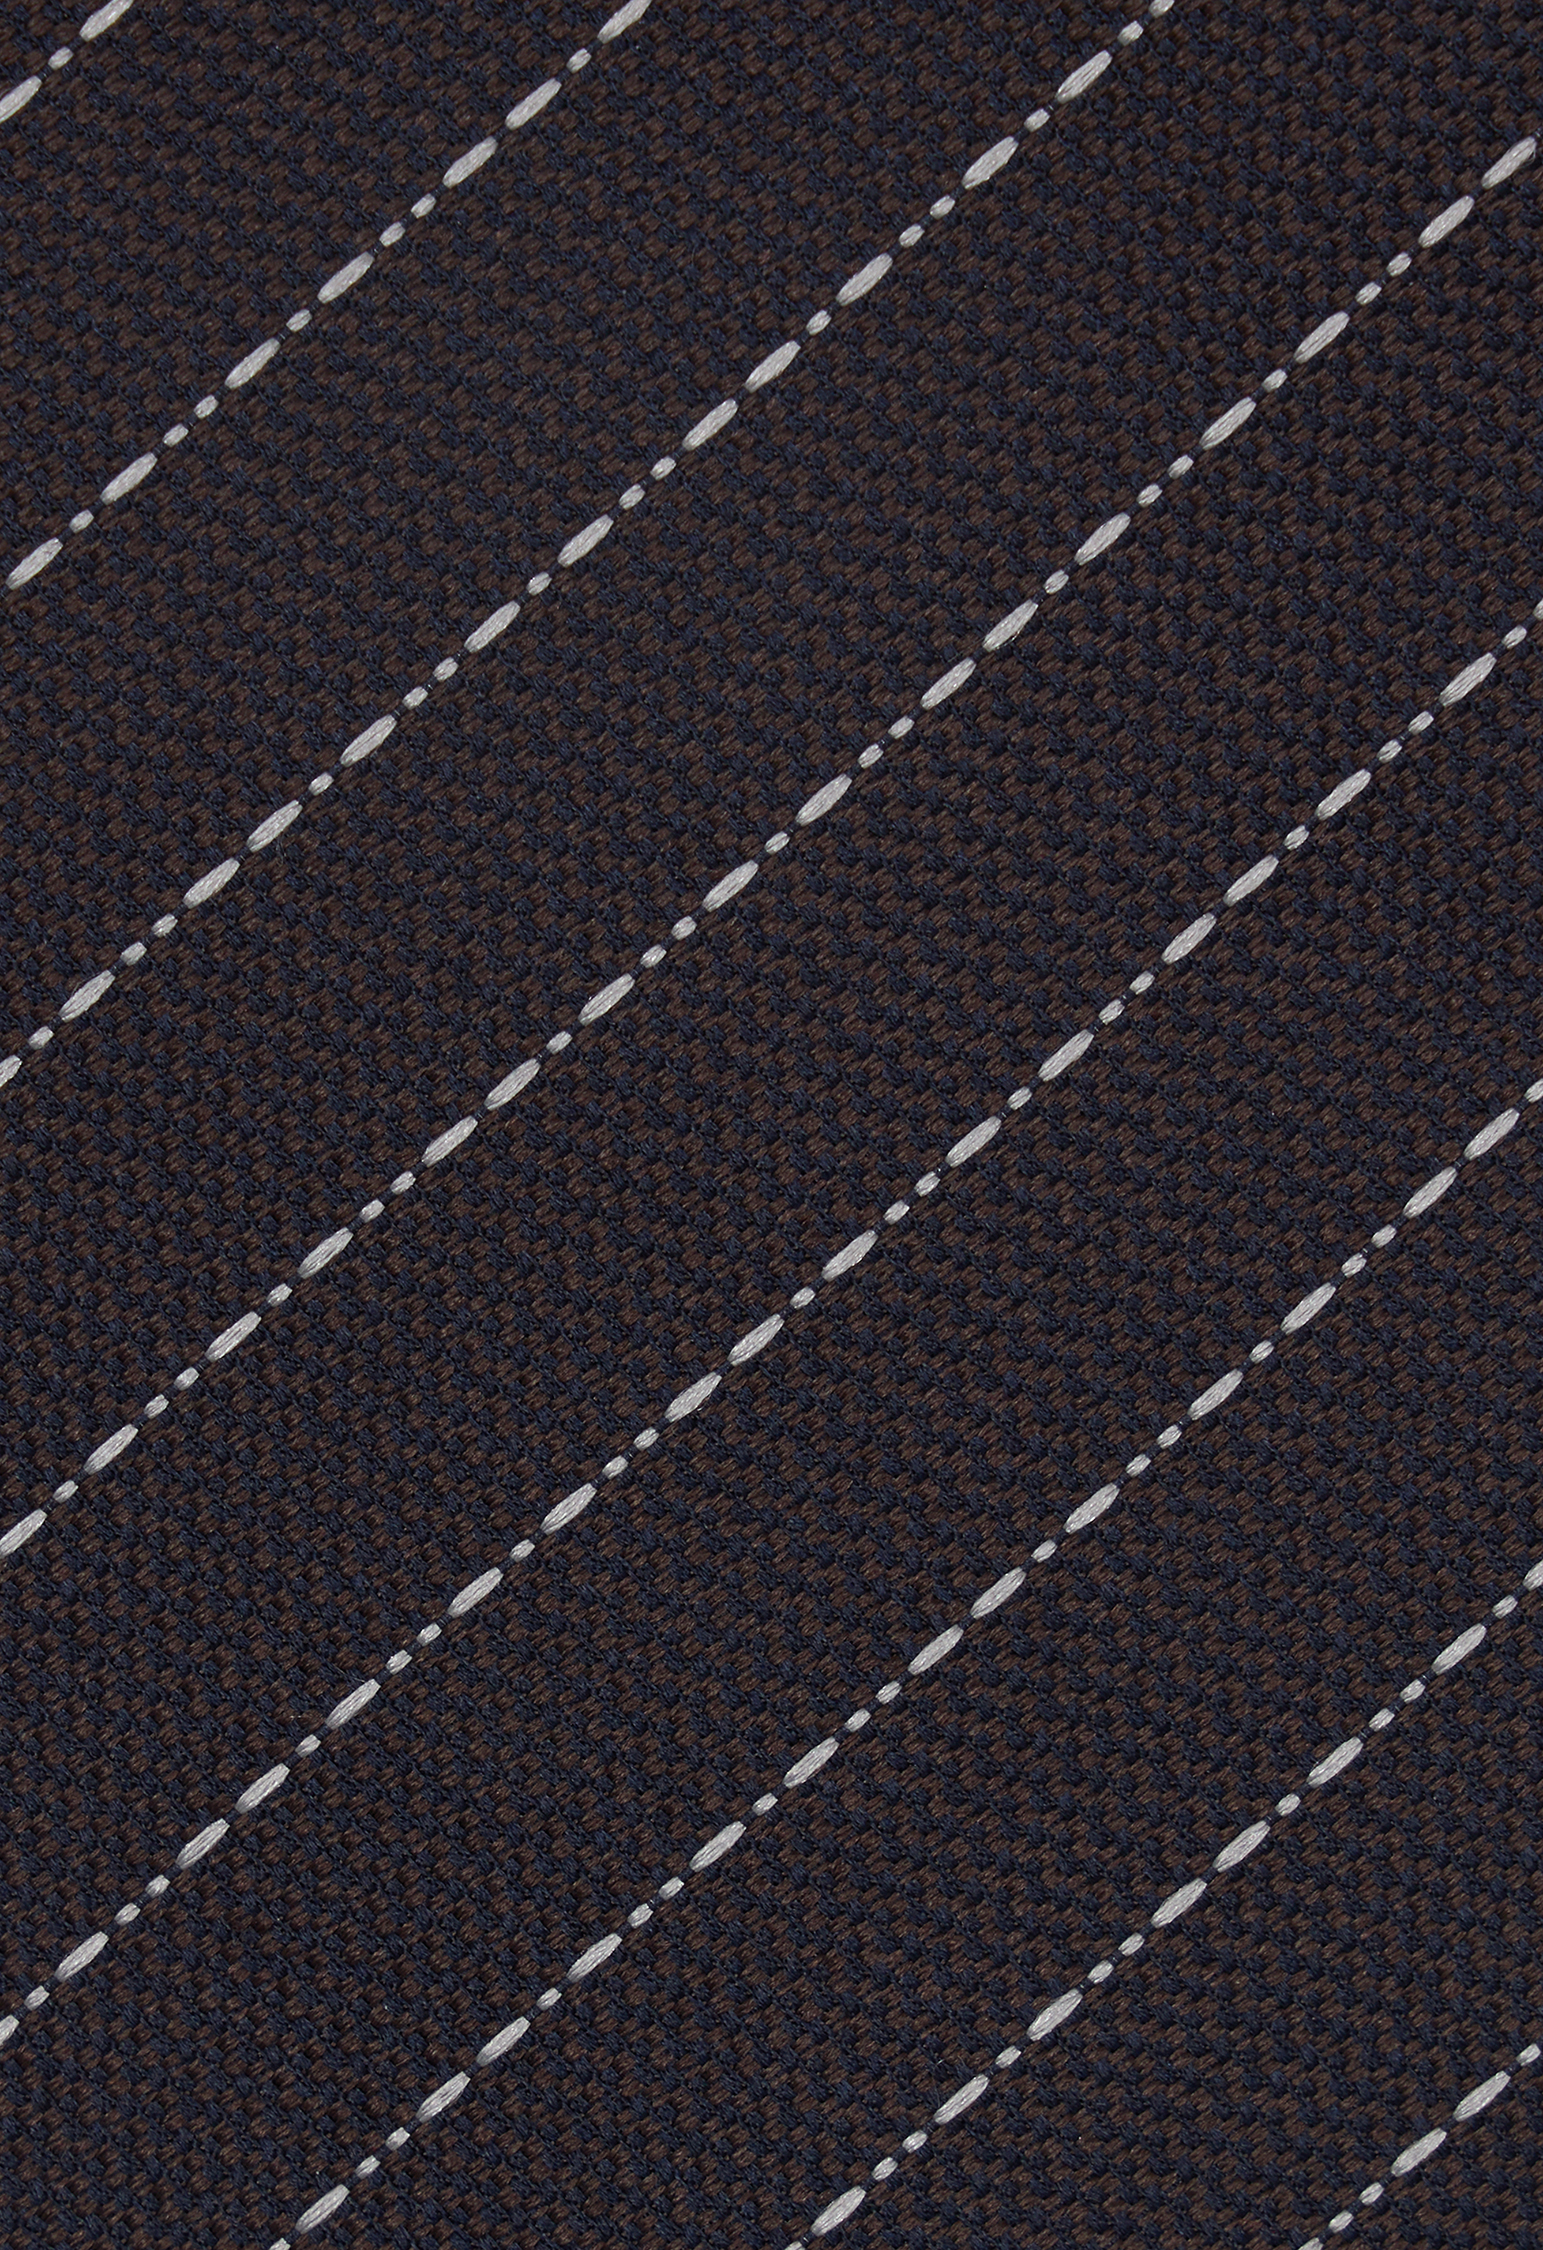 Shop Boglioli Tailored Silk Tie In Brown